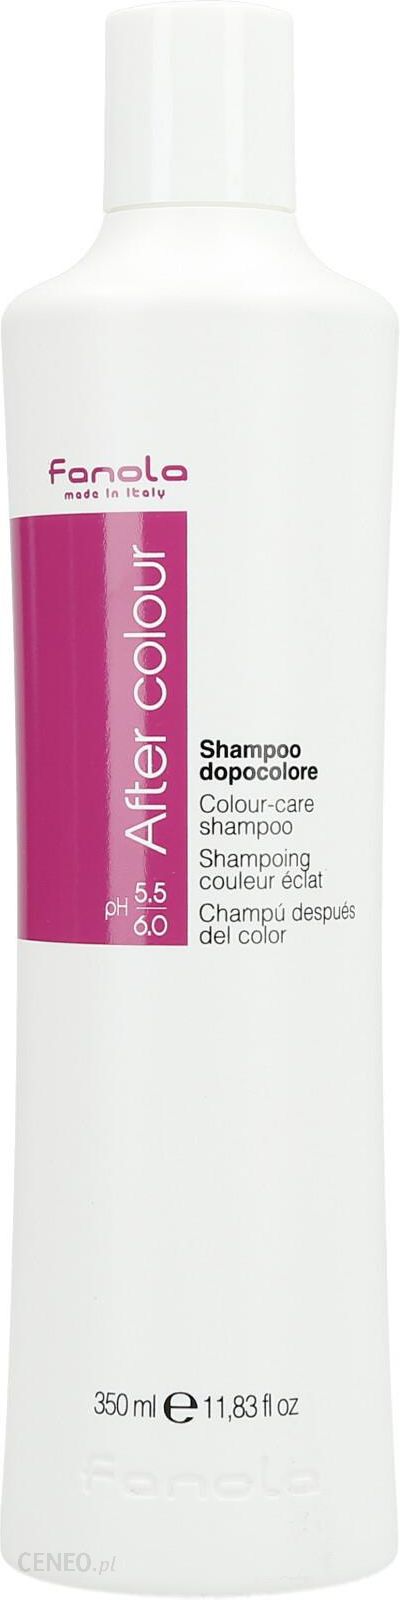 fanola after color szampon do włosów farbowanych 350ml inci